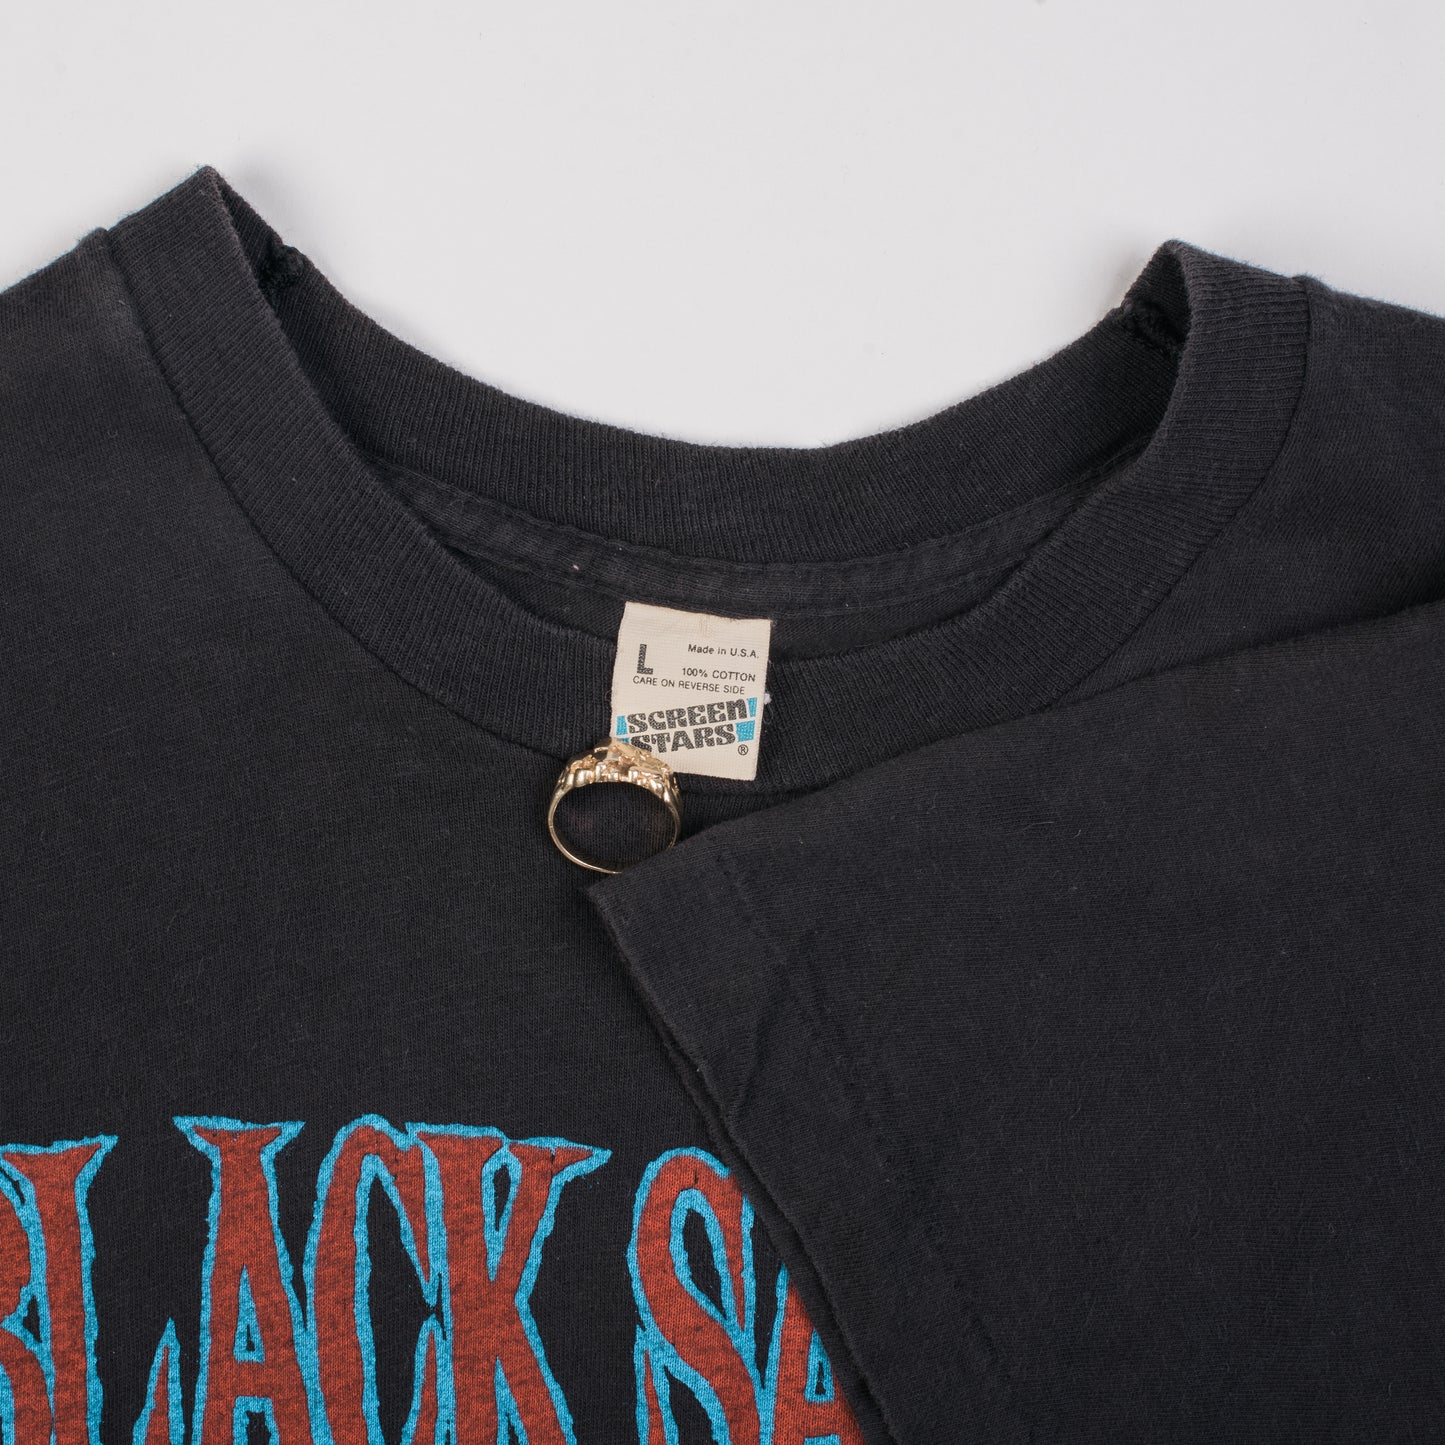 Vintage 1986 Black Sabbath Tour T-Shirt